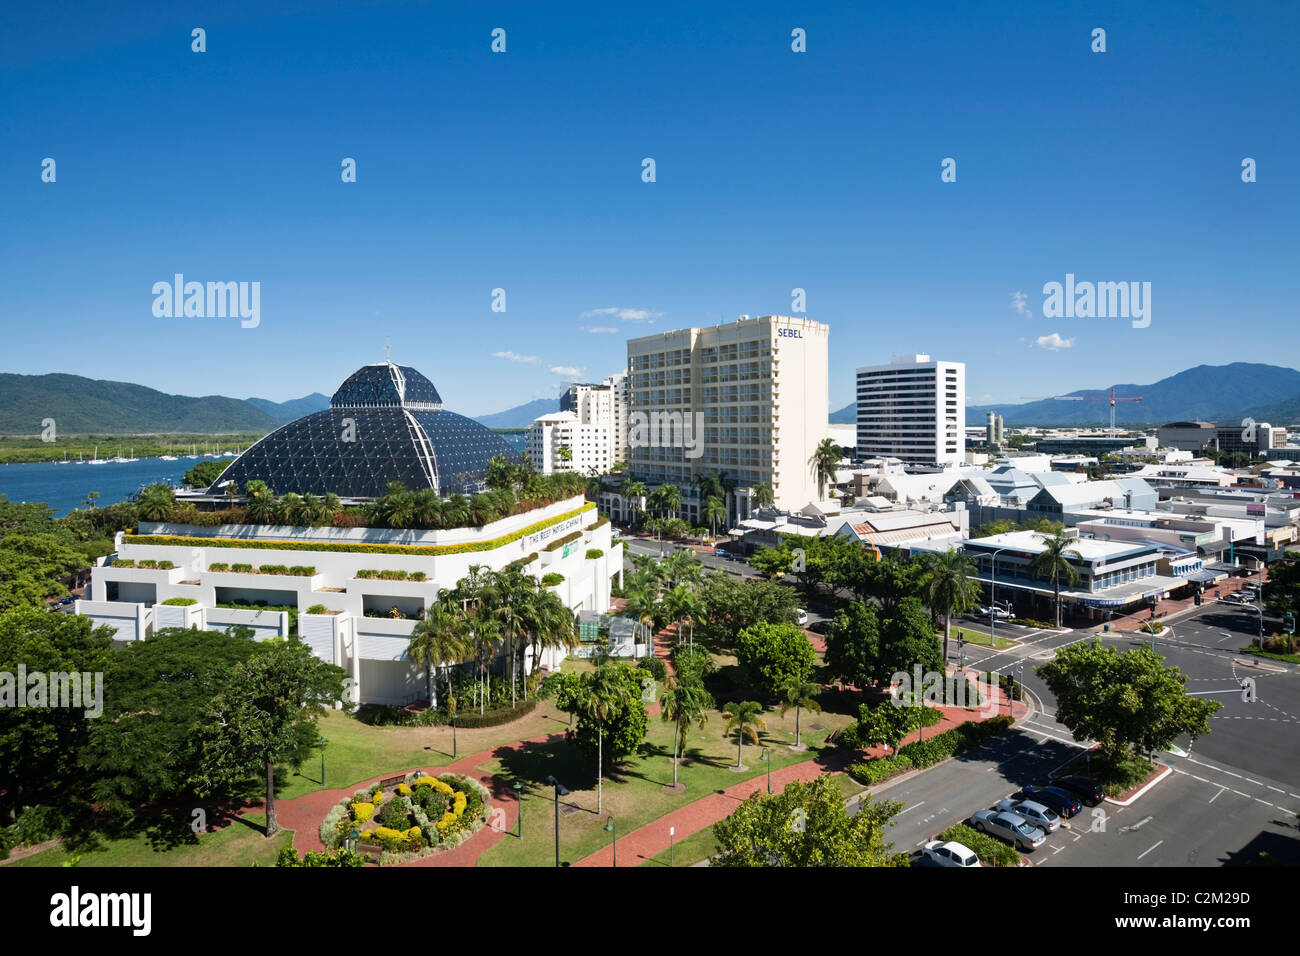 Die Skyline der Stadt samt Hotel Sebel Reef Hotel Casino. Cairns, Queensland, Australien Stockfoto